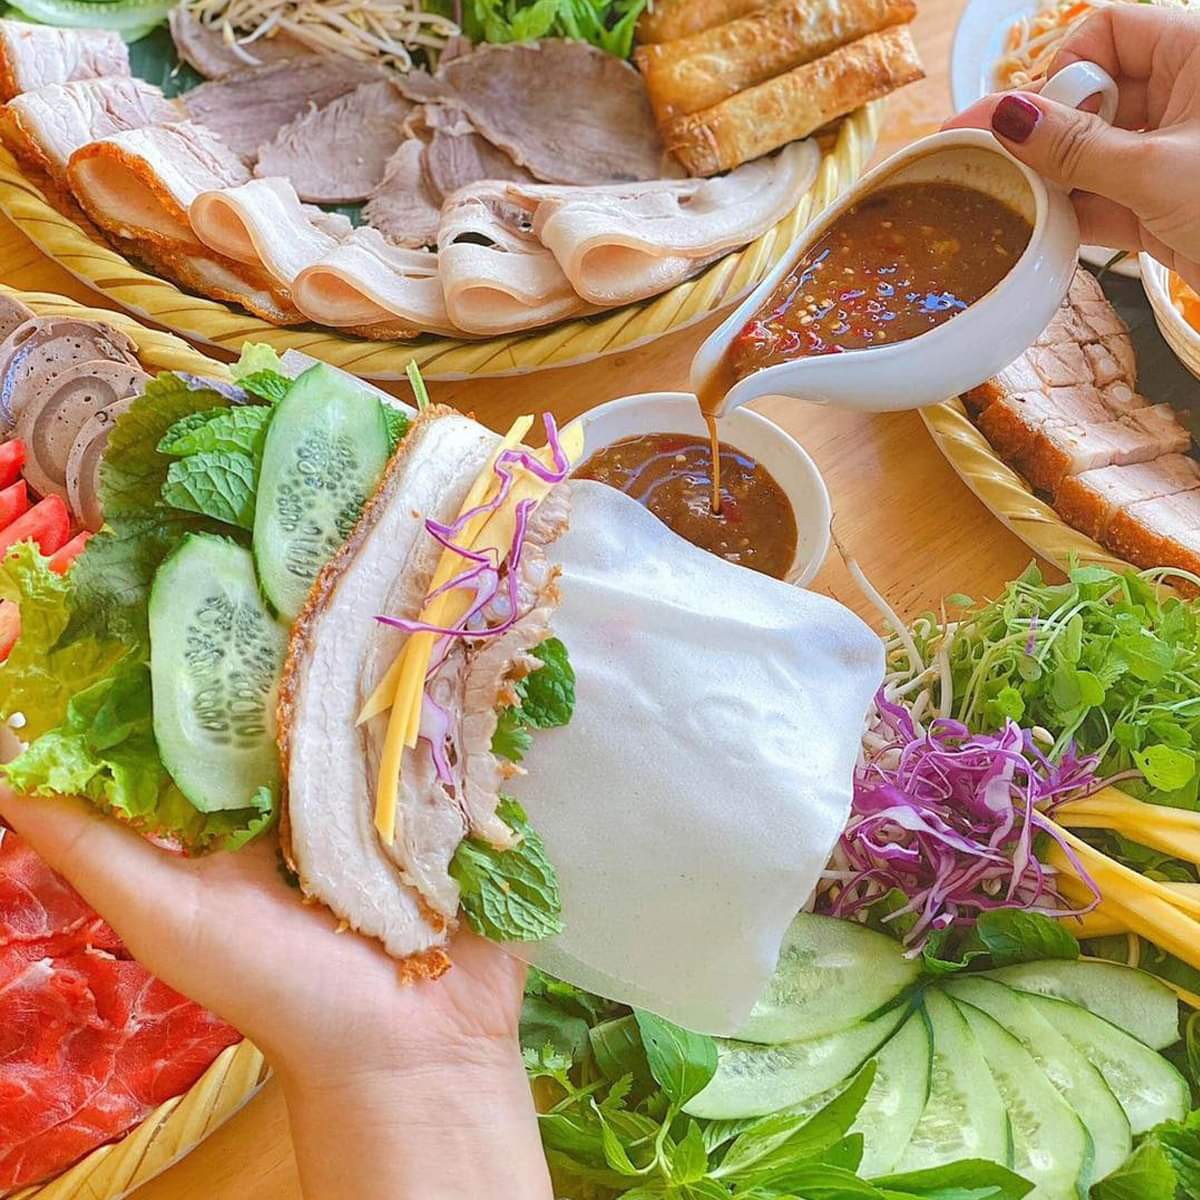  Bánh tráng cuốn thịt heo ngon đúng điệu không thể bỏ qua trong chuyến du lịch Đà Nẵng tiết kiệm